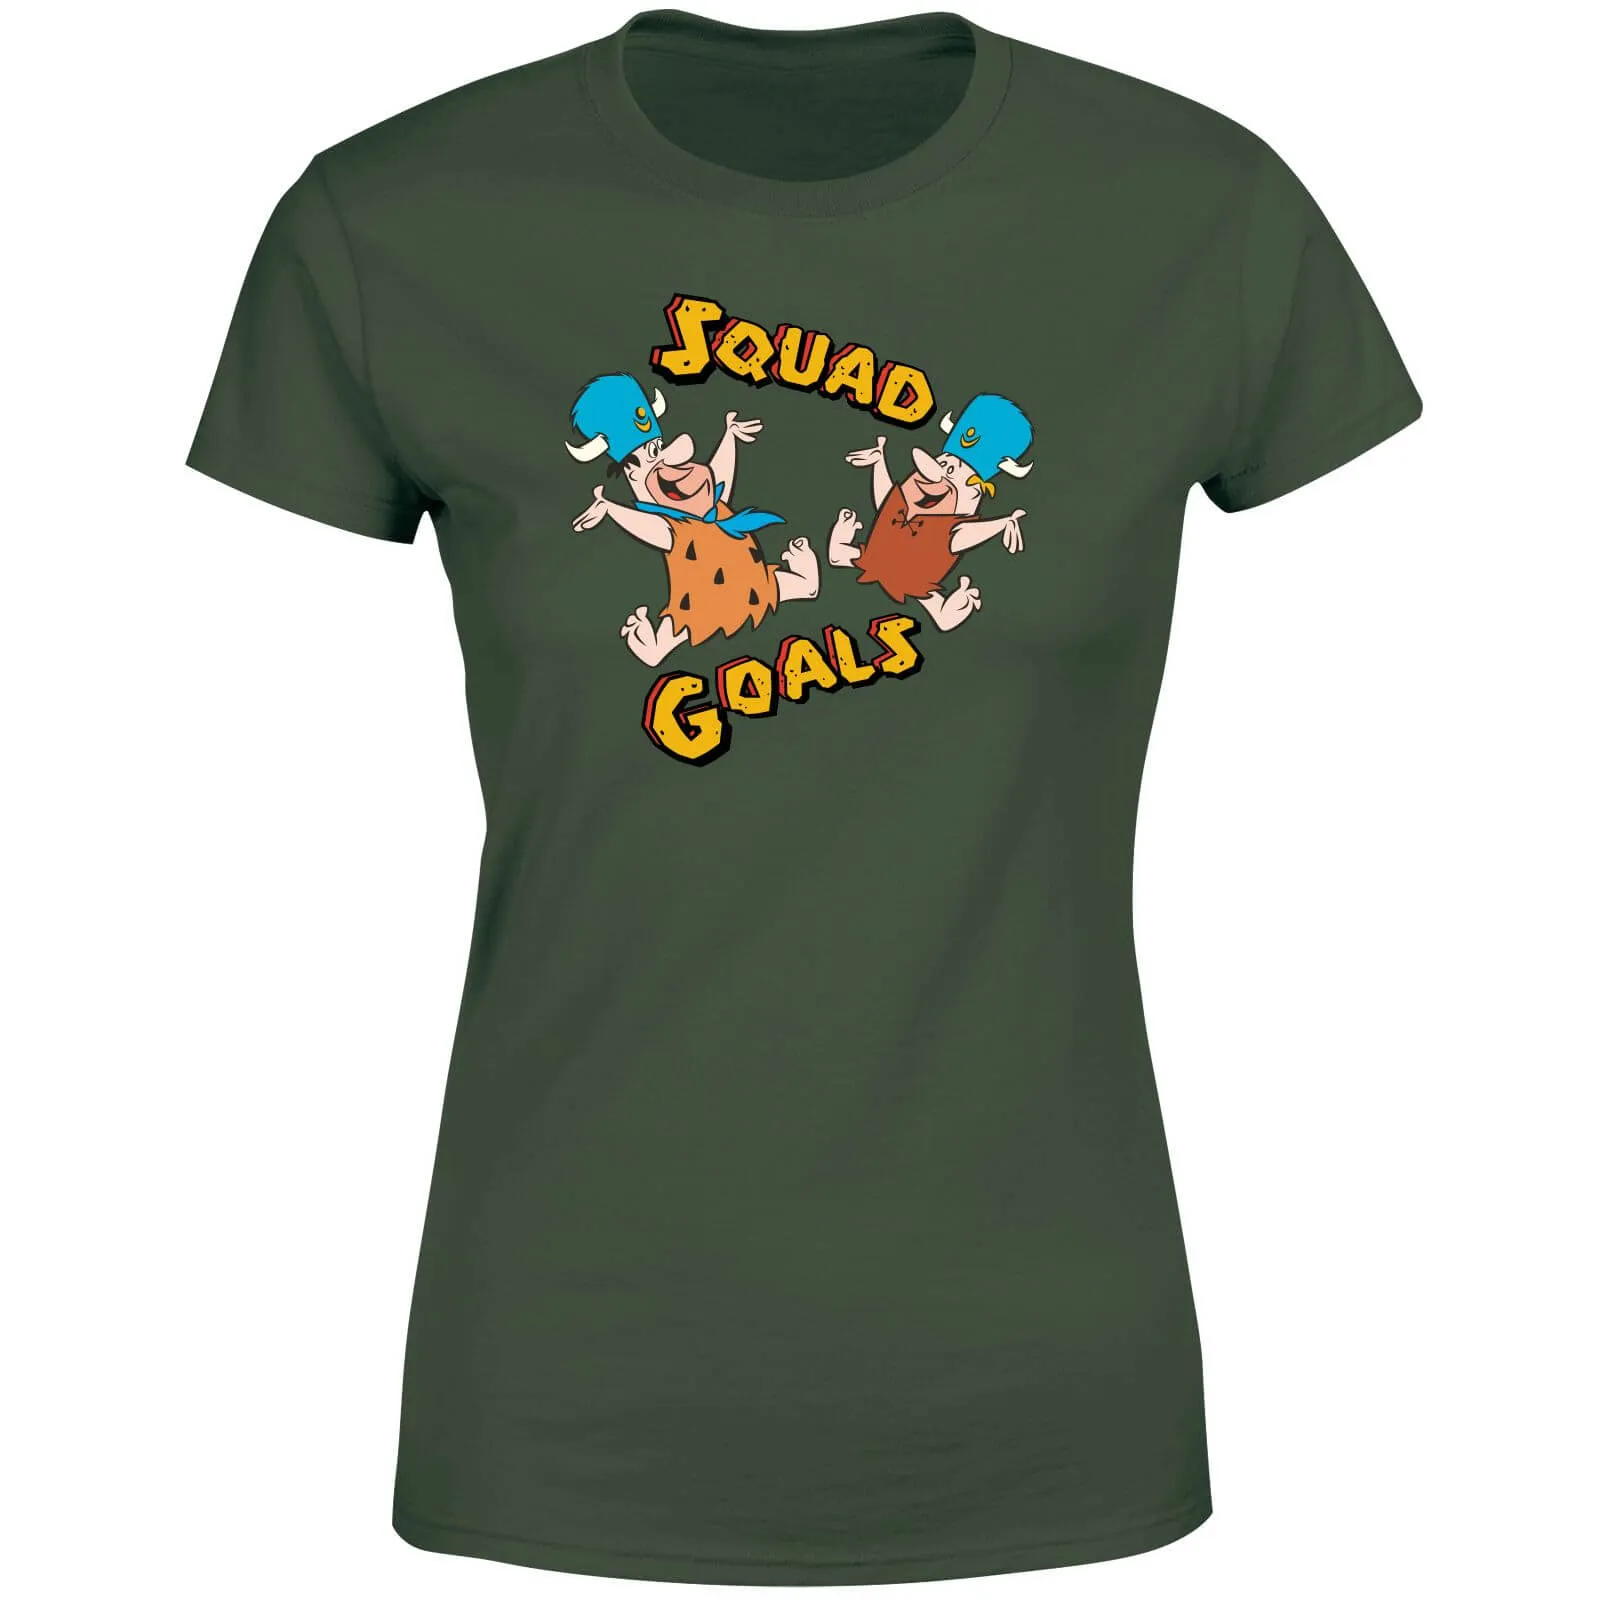 The Flintstones Squad Goals Women's T-Shirt - Forest Green - XXL - Forest Green